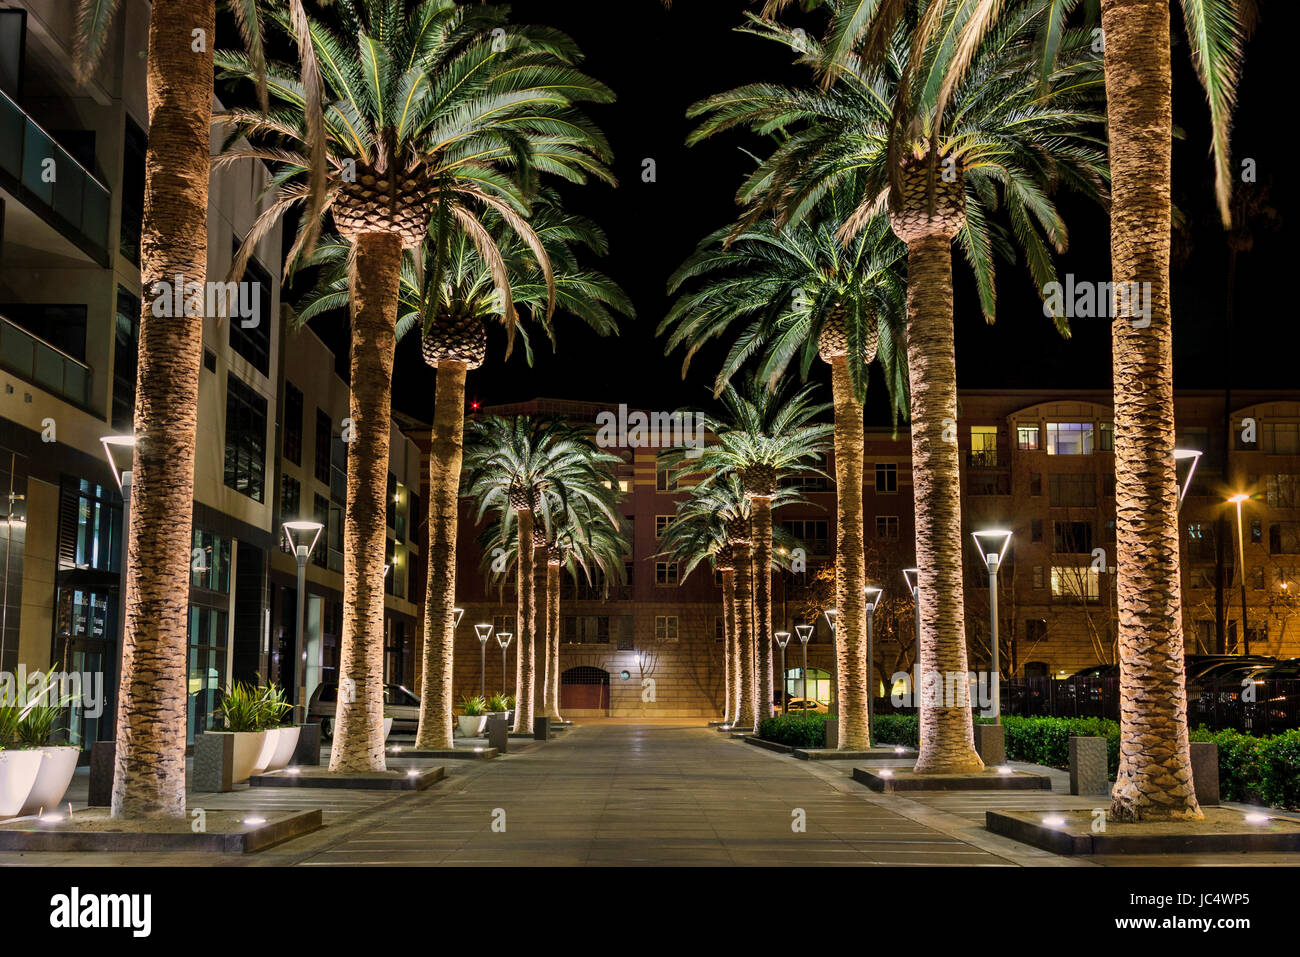 Il s'agit d'une image d'une rangée de palmiers situé au coeur de San Jose's downtown district. La scène est un ensemble bien éclairé de palmier situé al Banque D'Images